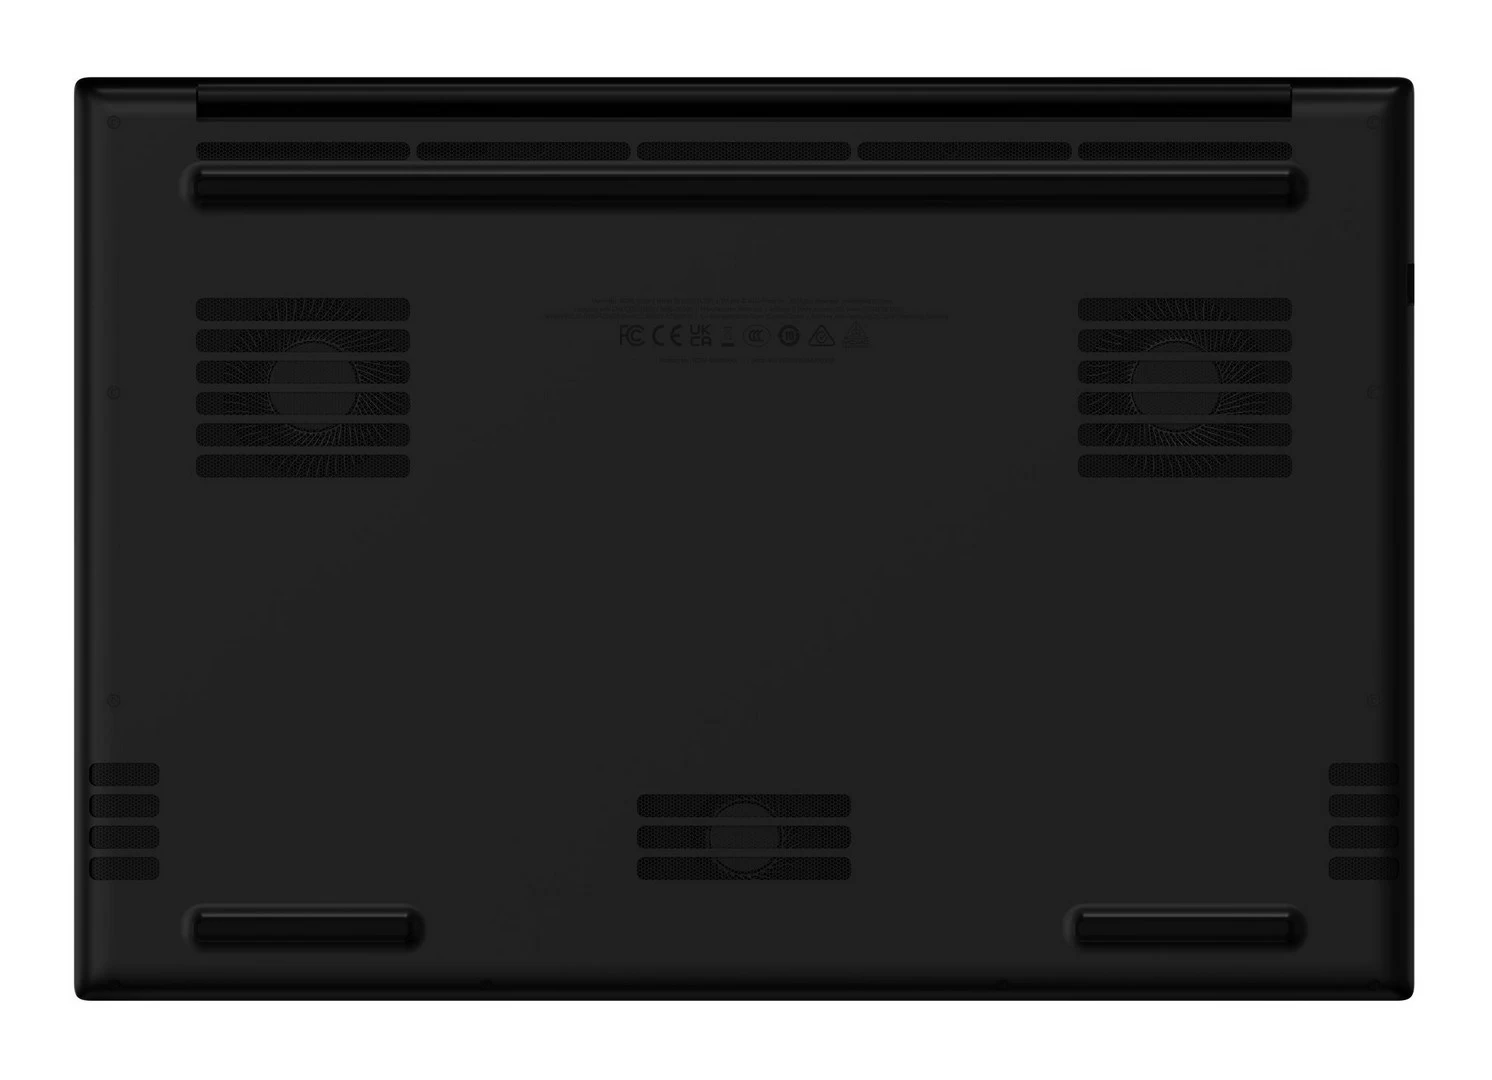 شركة Razer تطلق لاب توب Blade 18 مع أقوى العتاد و4K بسعر 4800 دولار